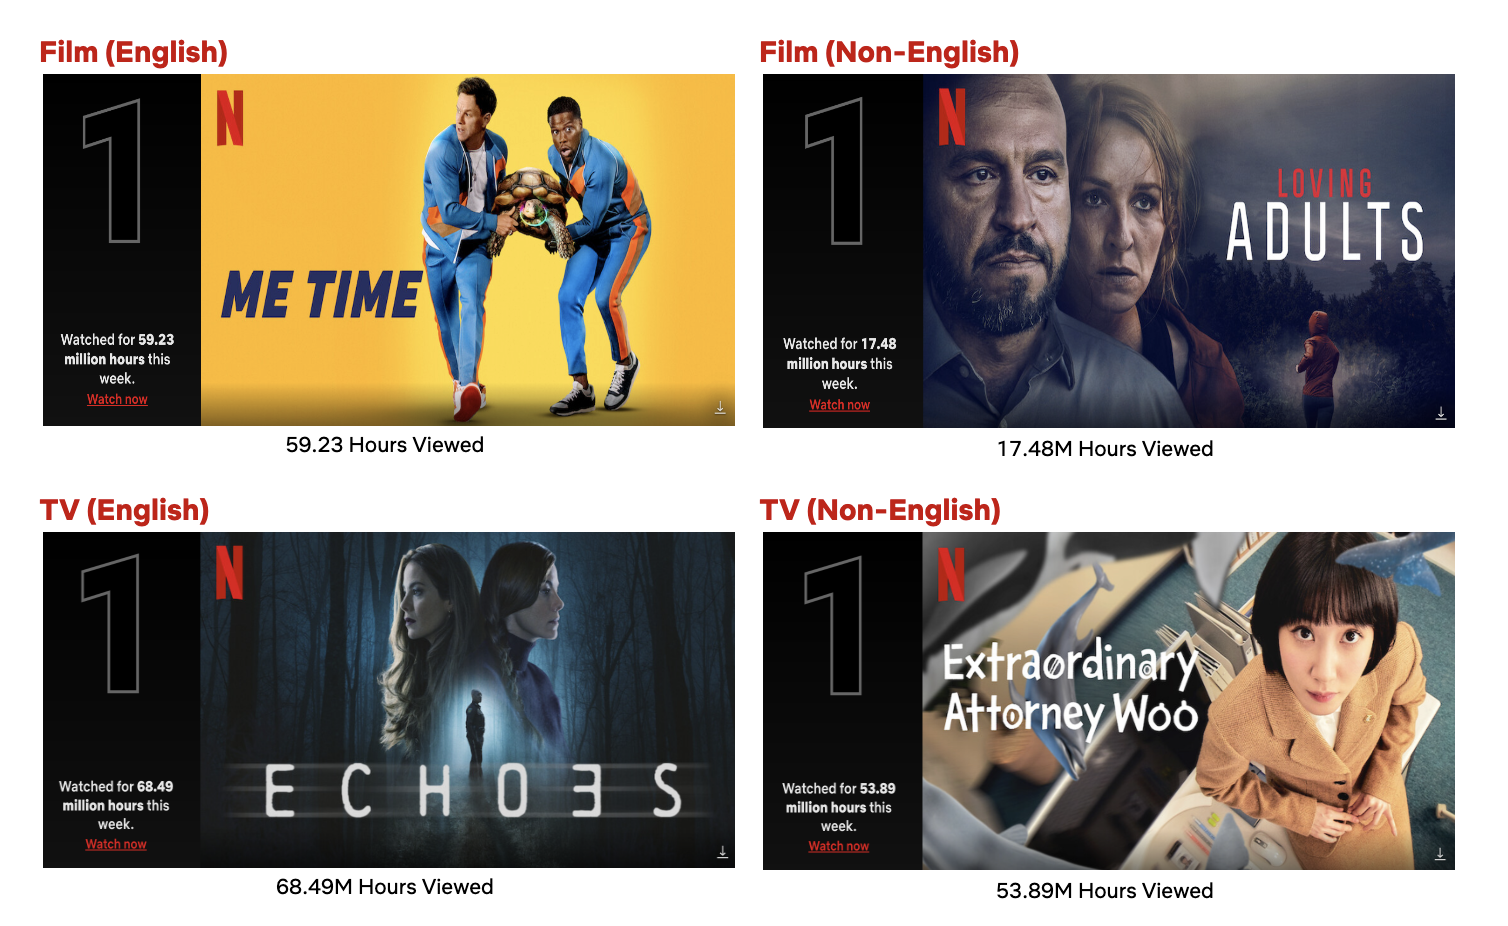 Dica da Netflix: Os filmes e séries que você só poderá assistir até este  fim de semana – Metro World News Brasil